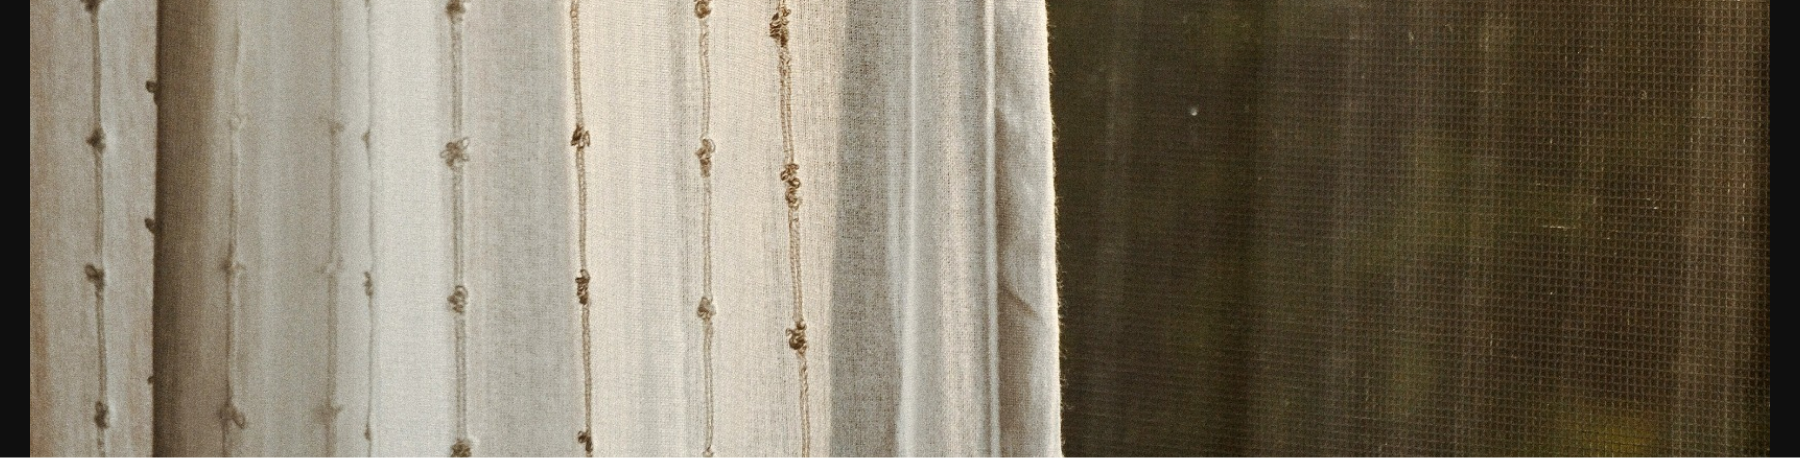 Eterea. Текстильный дизайн интерьера — Изображение №11 — Интерфейсы, Анимация на Dprofile